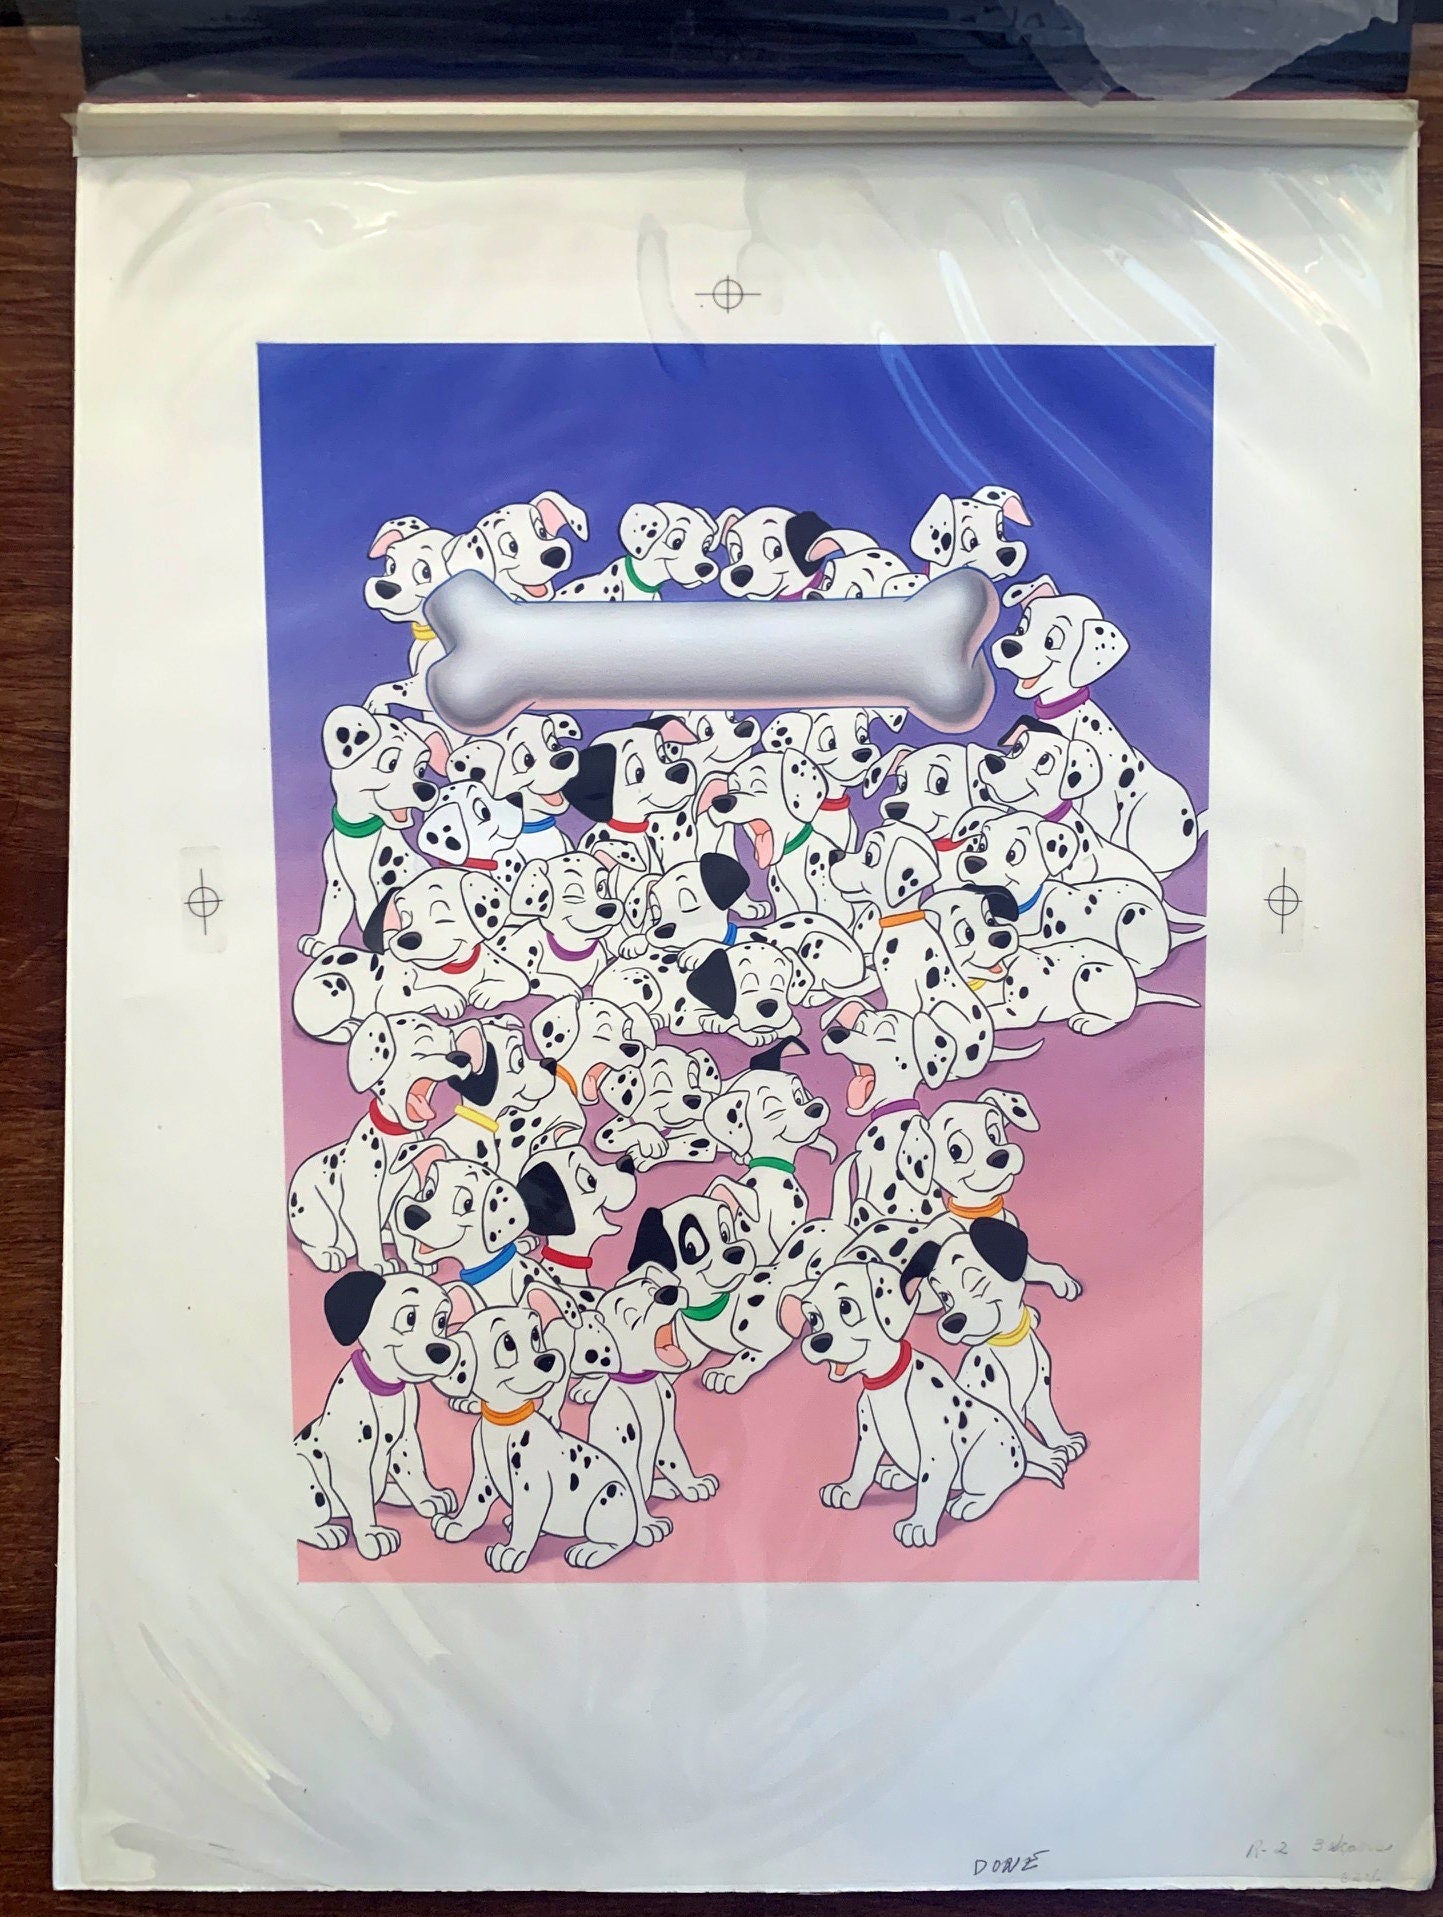 101 Dalmatians Walt Disney McDonalds Happy Meal Box Design Art 1991 HUGE